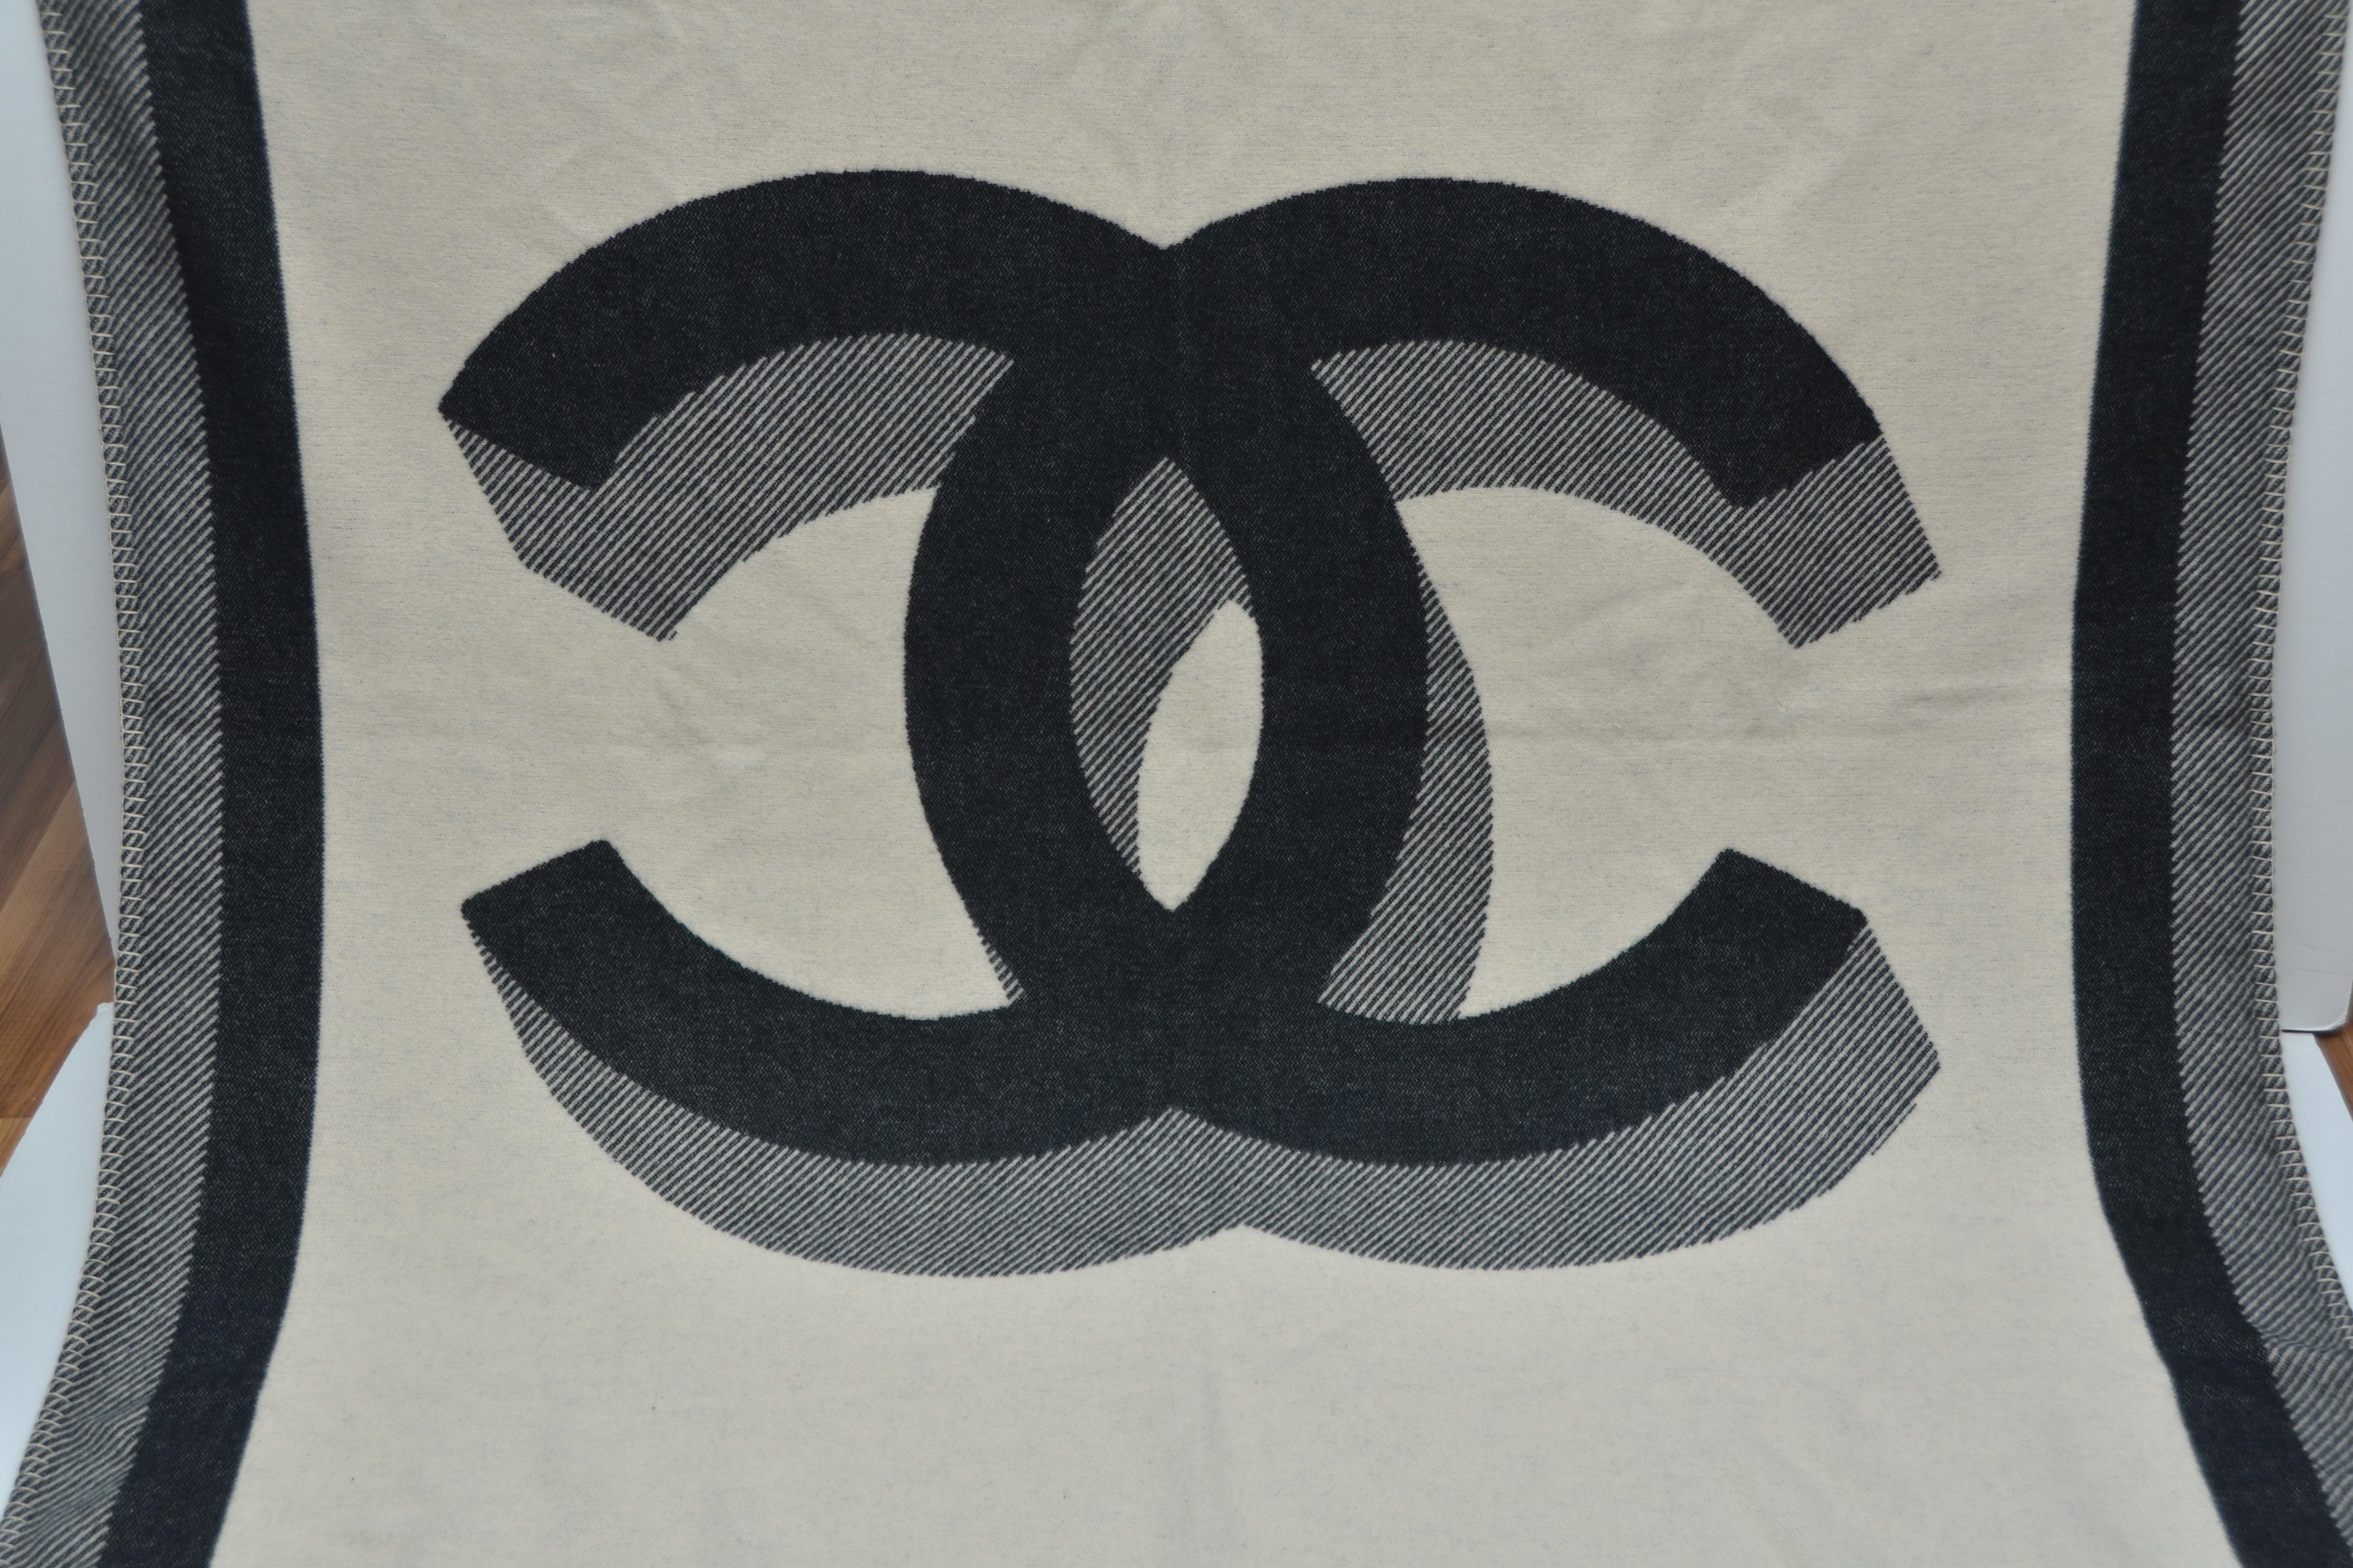 Chanel Reiseteppich, Überwurf oder Decke
Neu mit Chanel Staubbeutel und Etiketten
Zwei verschiedene Seiten mit großem CC 
Ungefähre Maße: 74' X 55